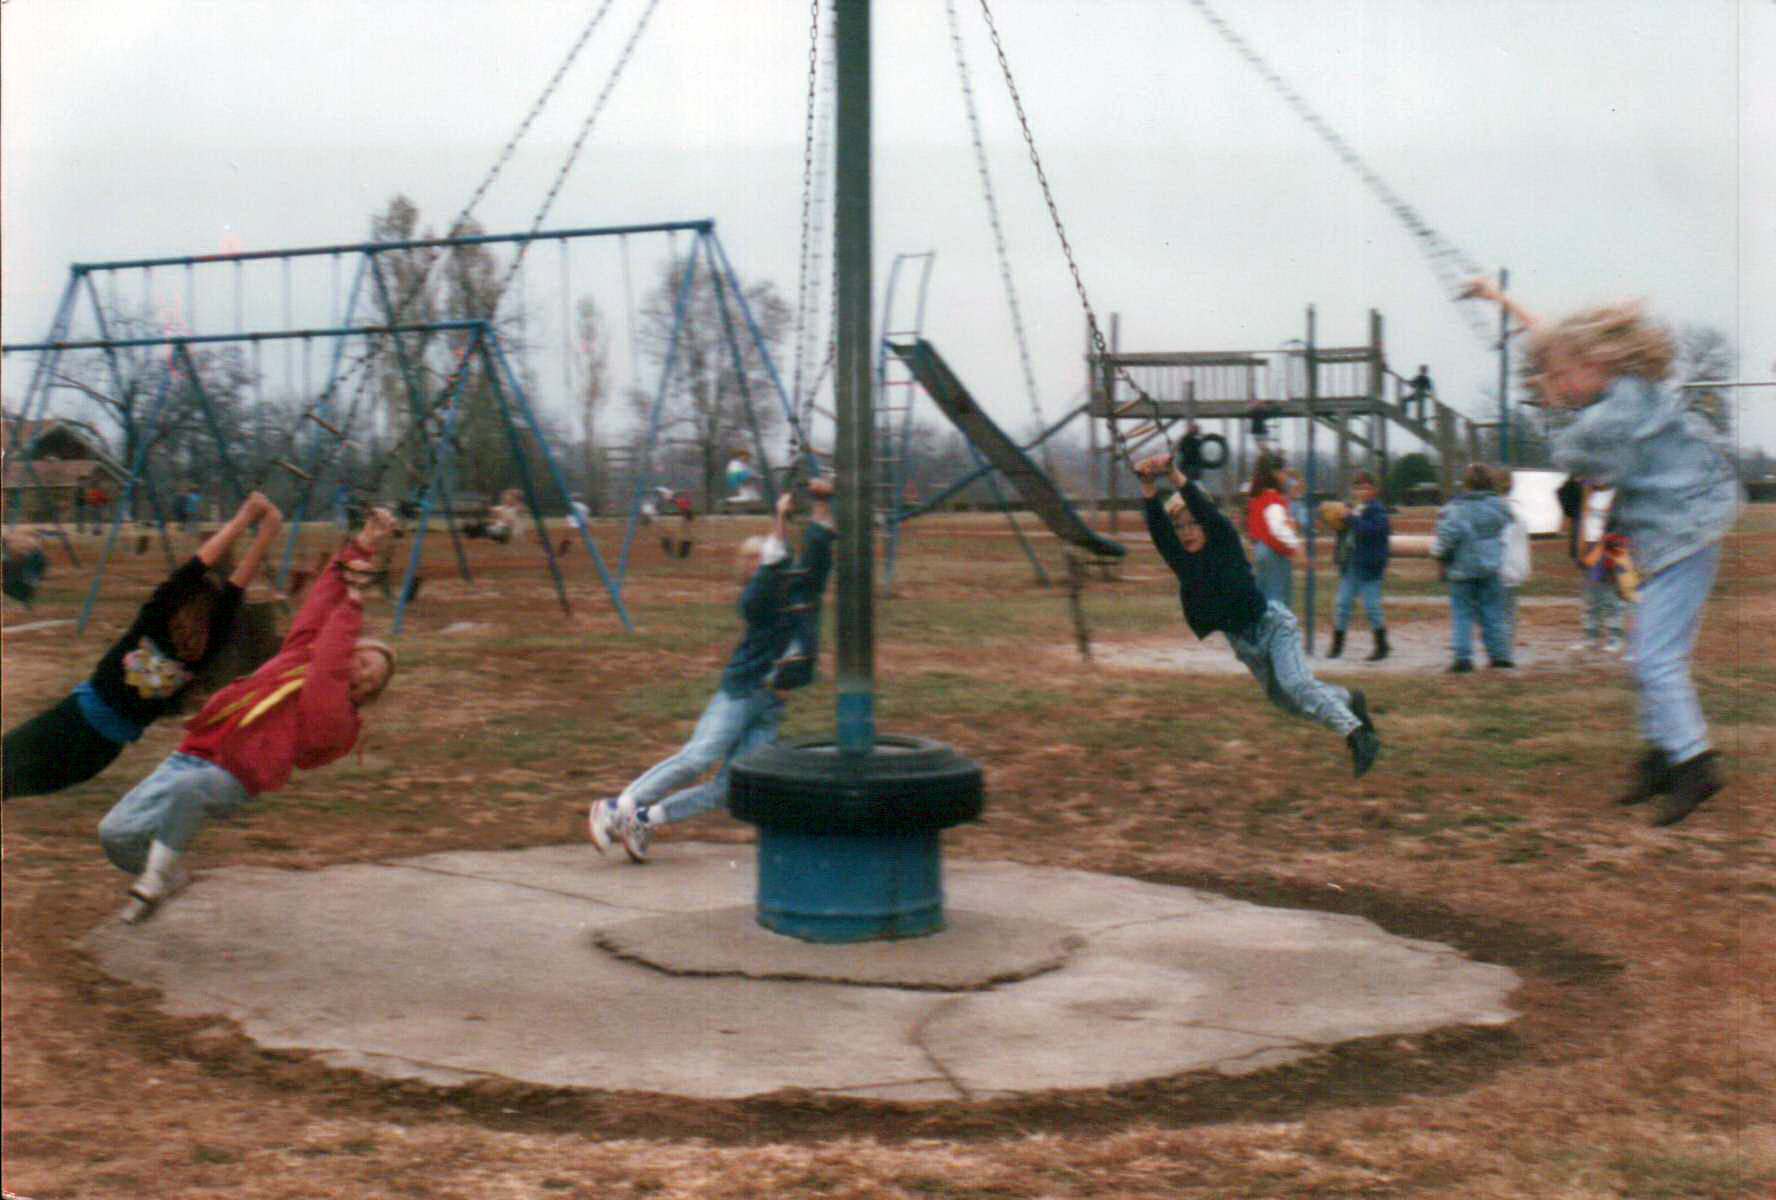 70s playground